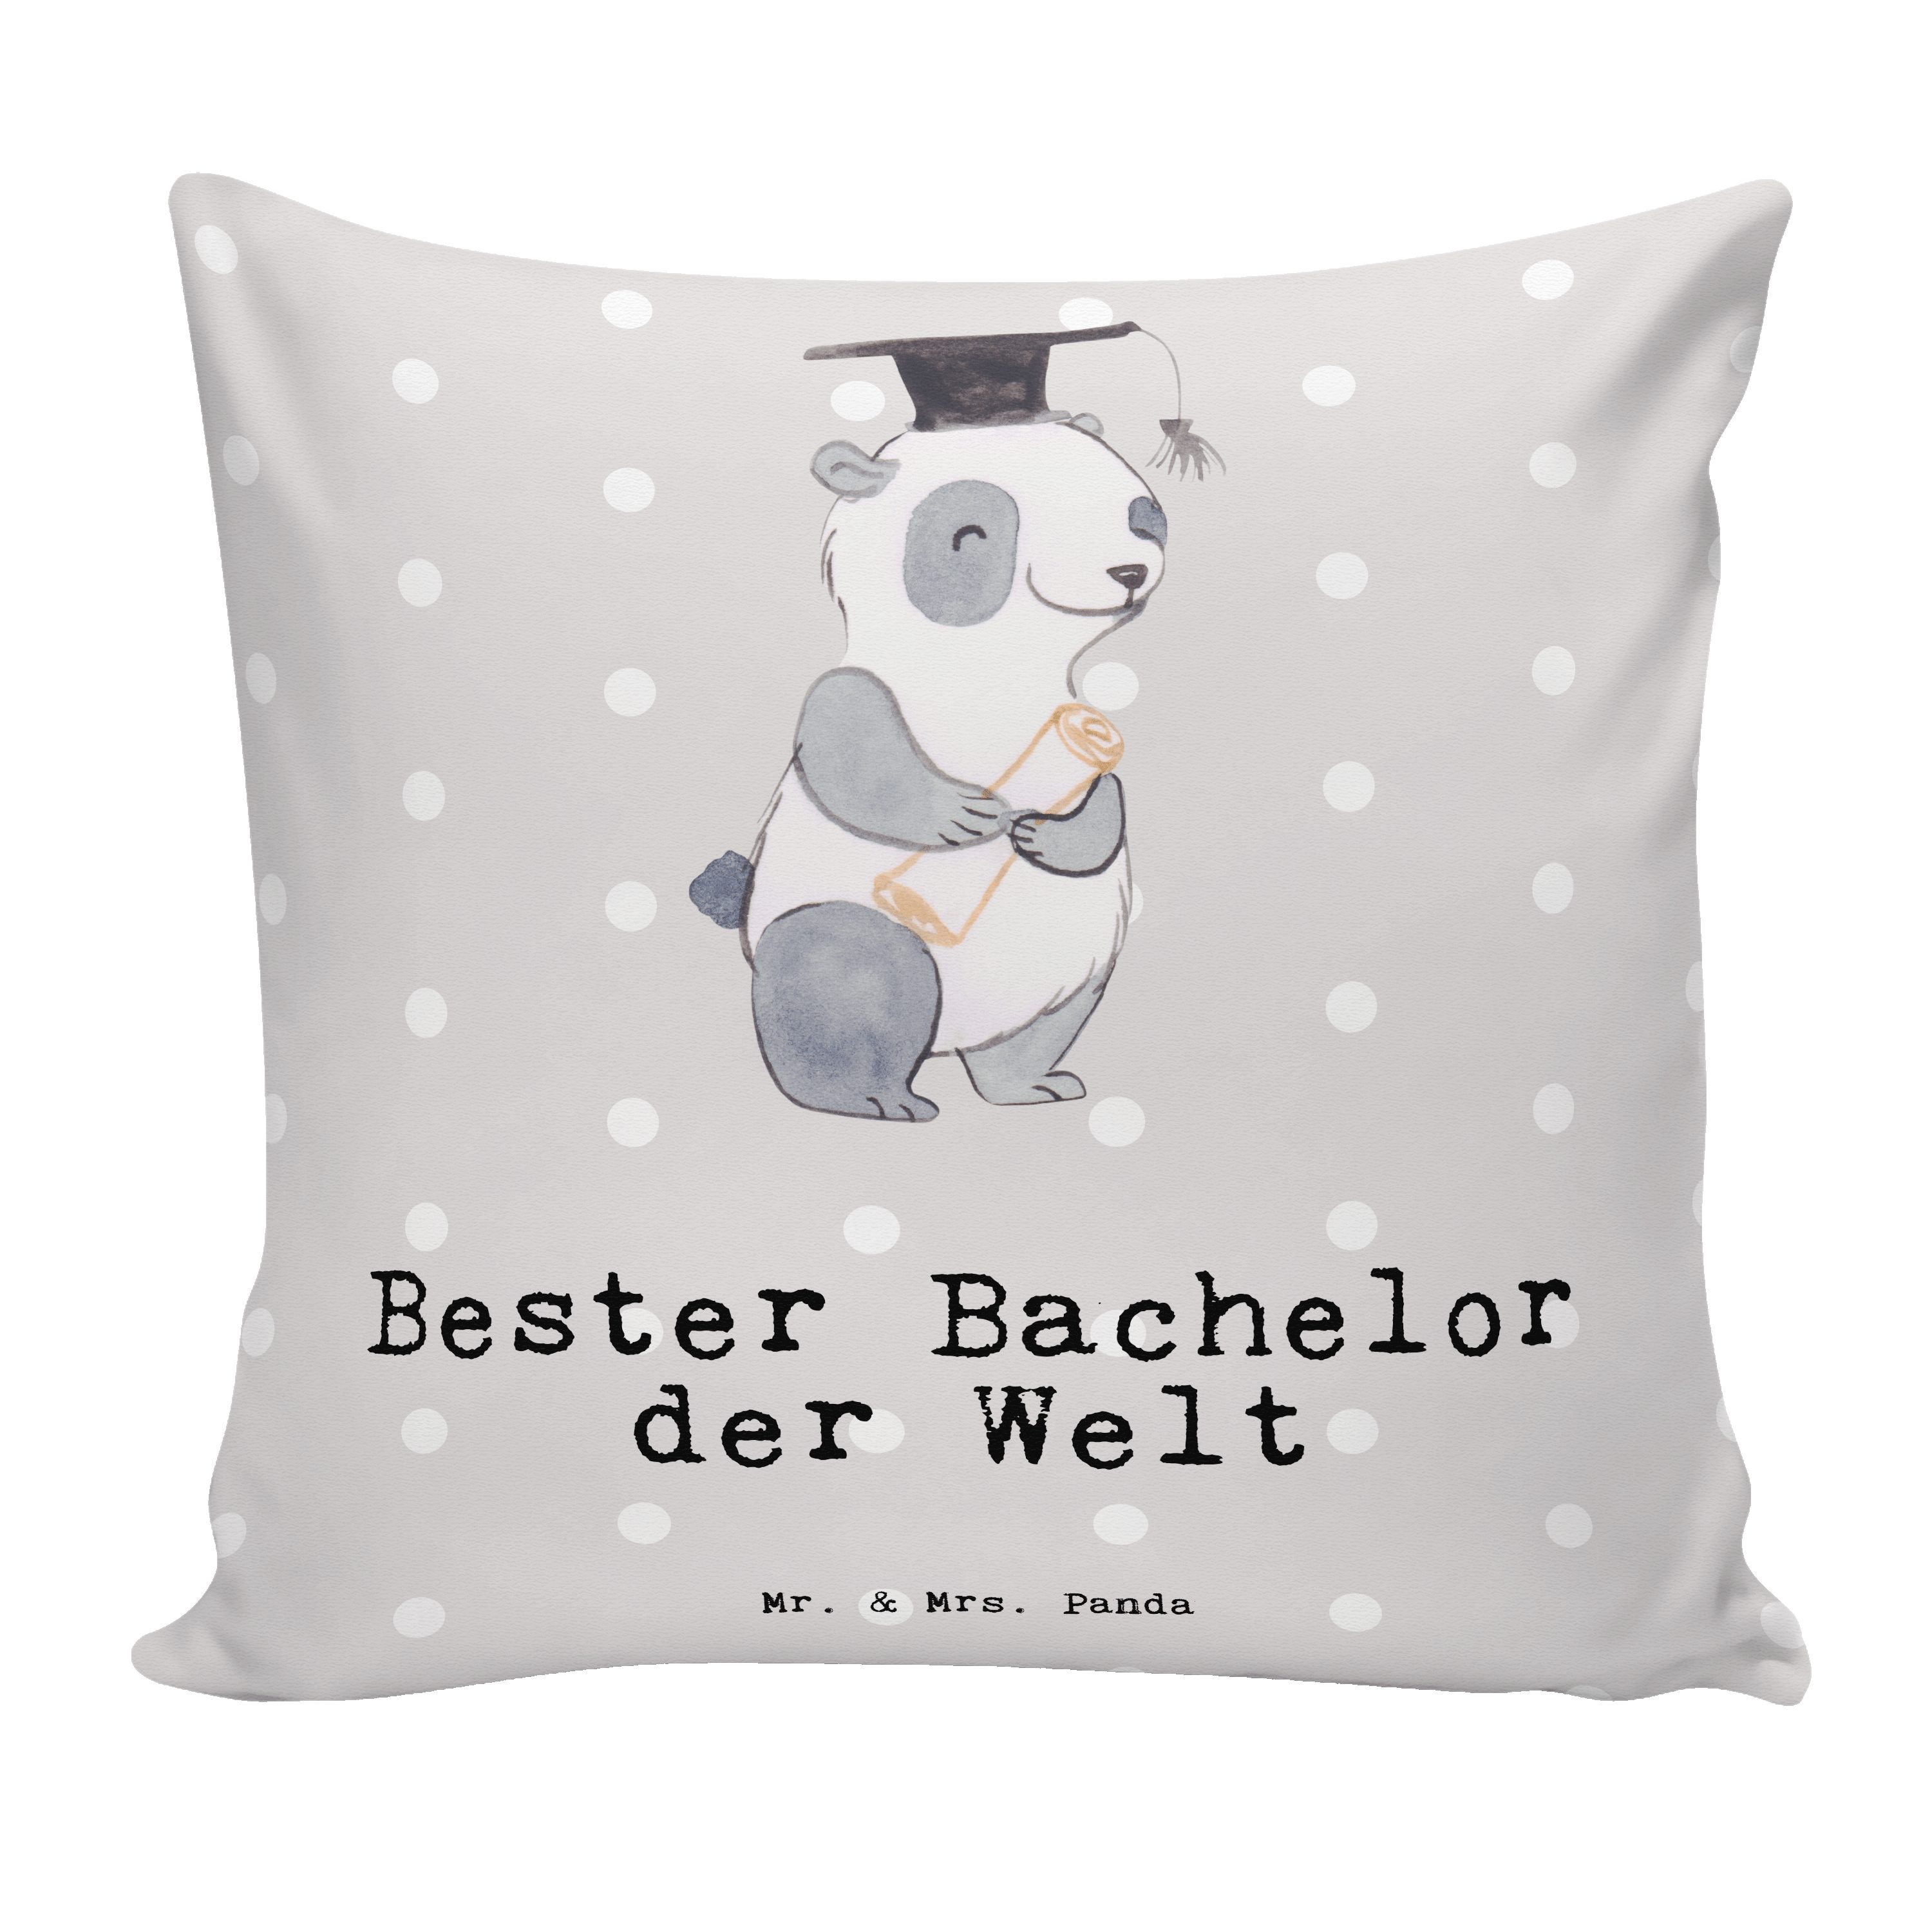 Mr. & Mrs. Panda Geschenk, Pastell - Welt - Dekokissen Bachelor Panda Grau Freude der mach Bester